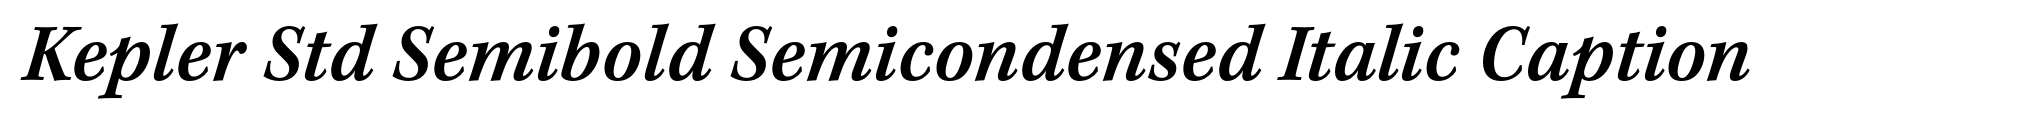 Kepler Std Semibold Semicondensed Italic Caption image